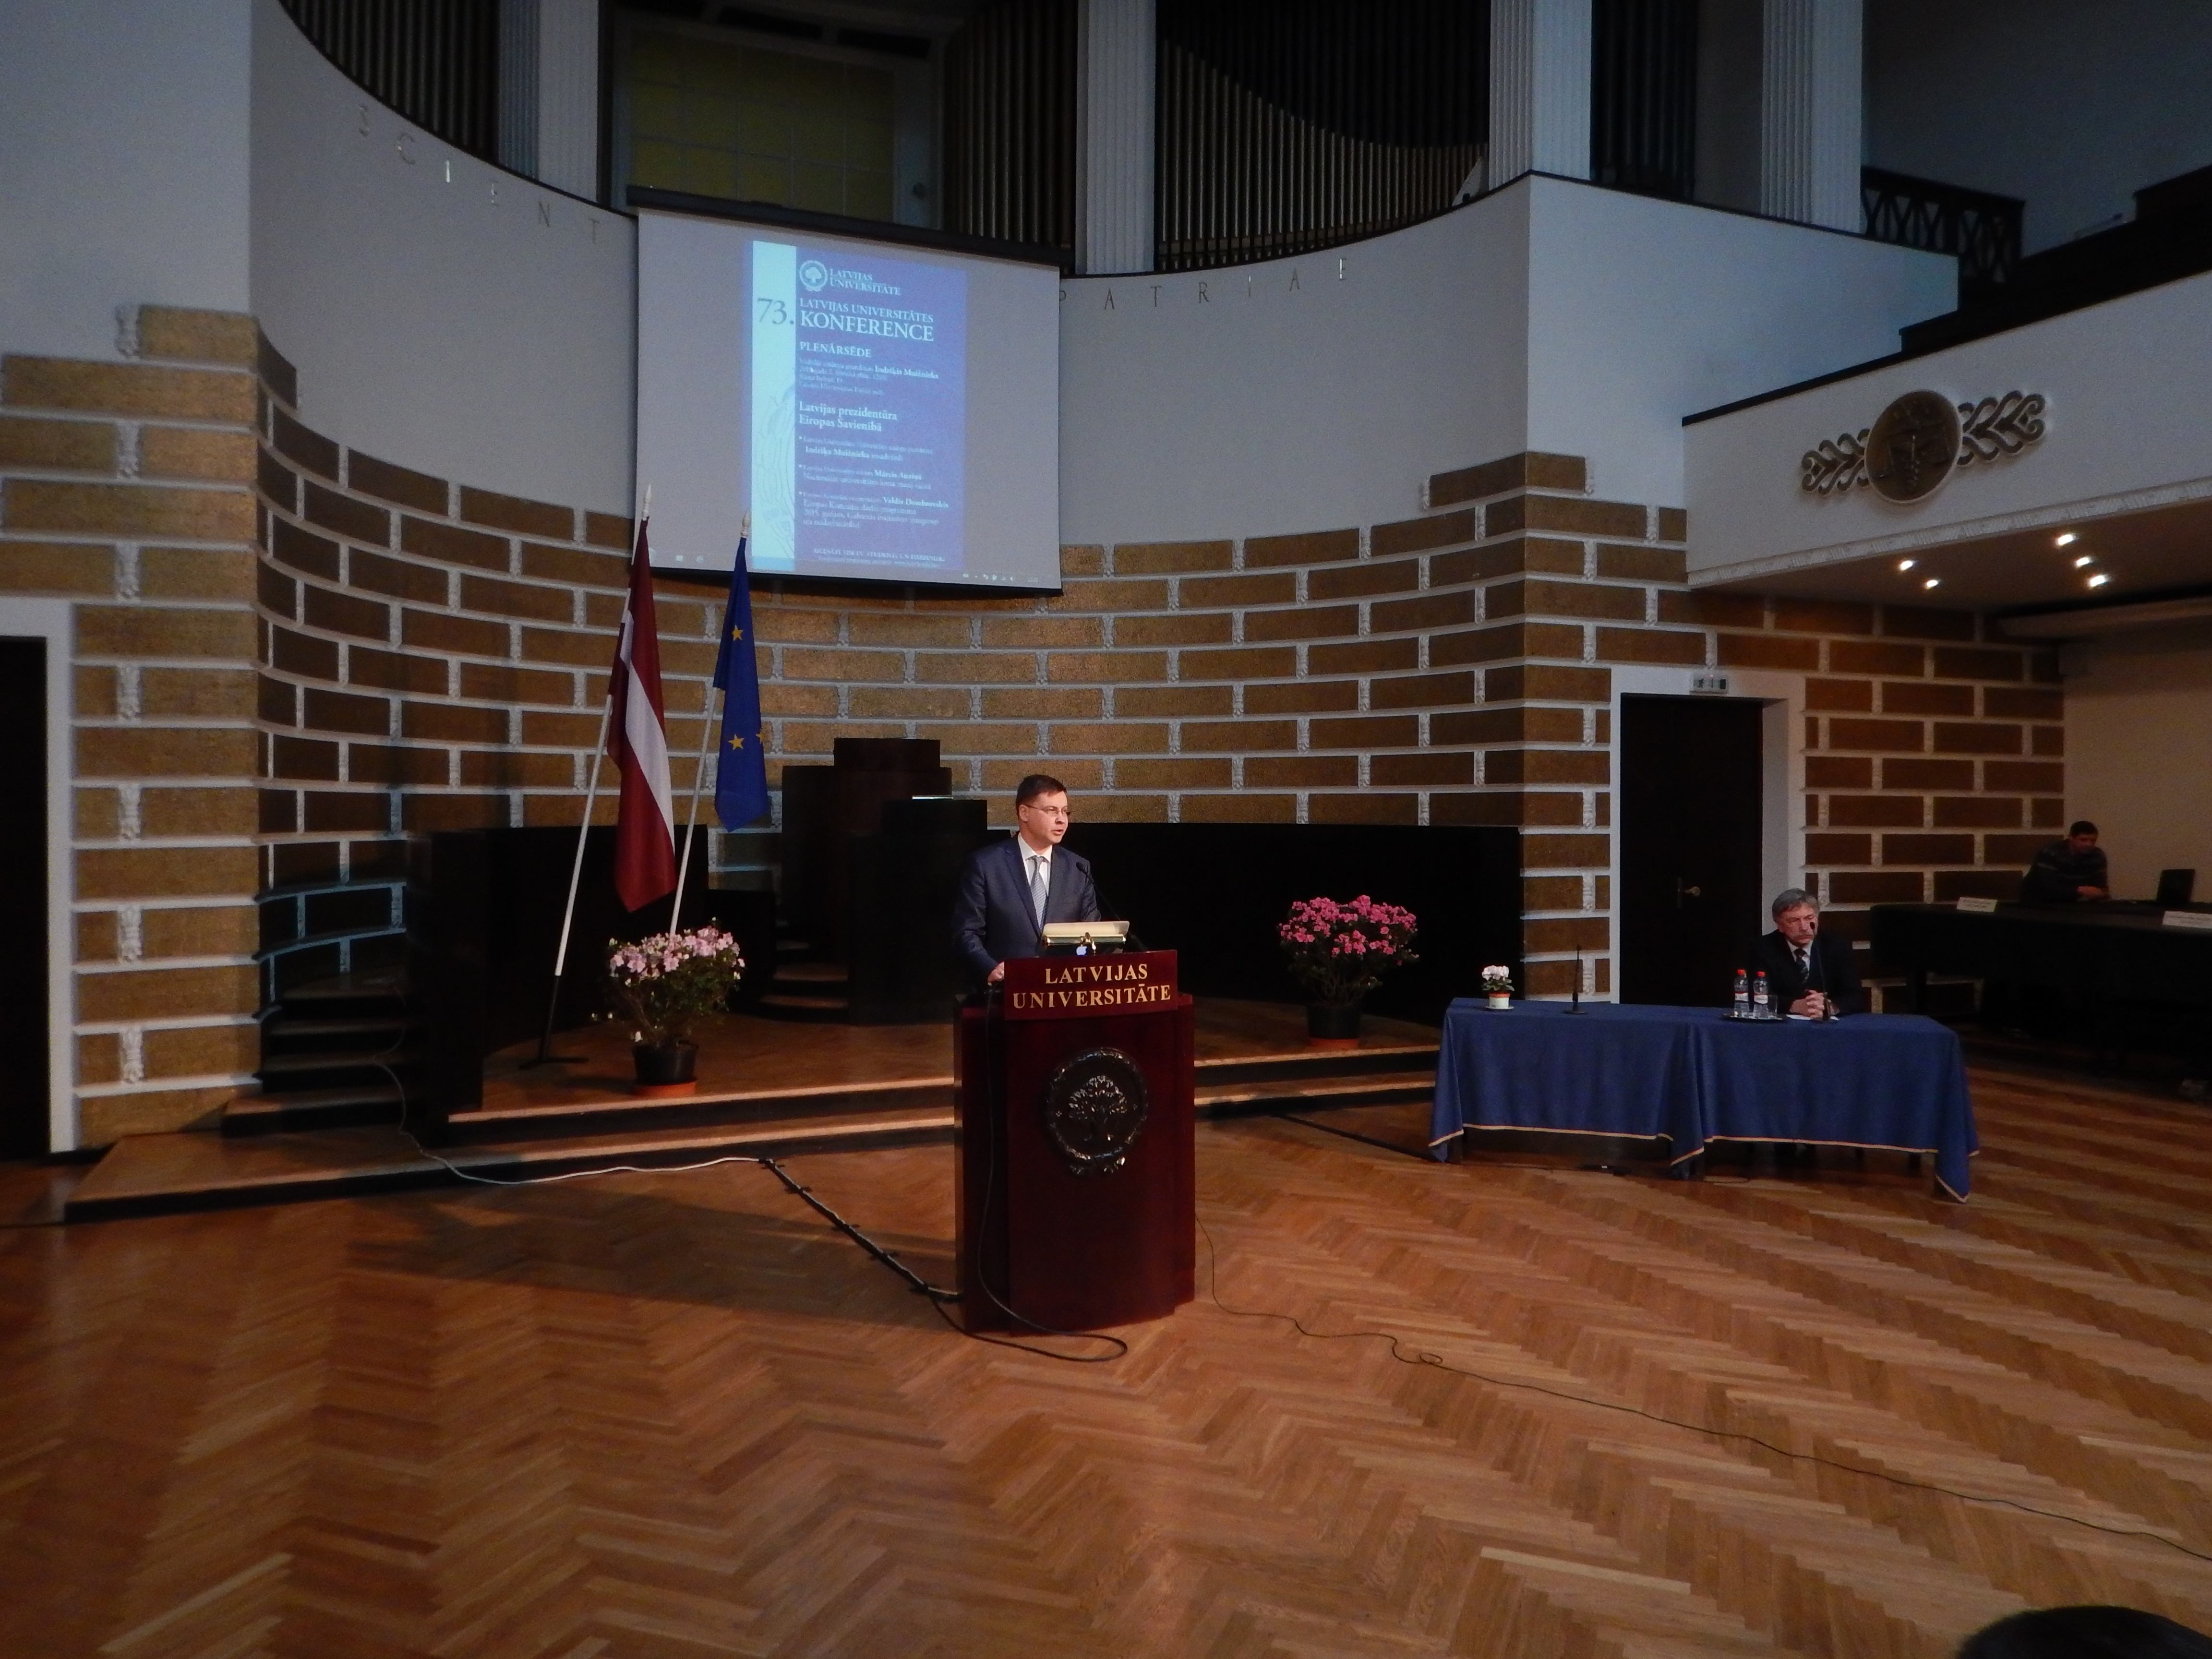 Valdis Dombrovskis lors de sa conférence à l'université de Lettonie le 2 février 2015. Crédit : Jean-Baptiste Roncari